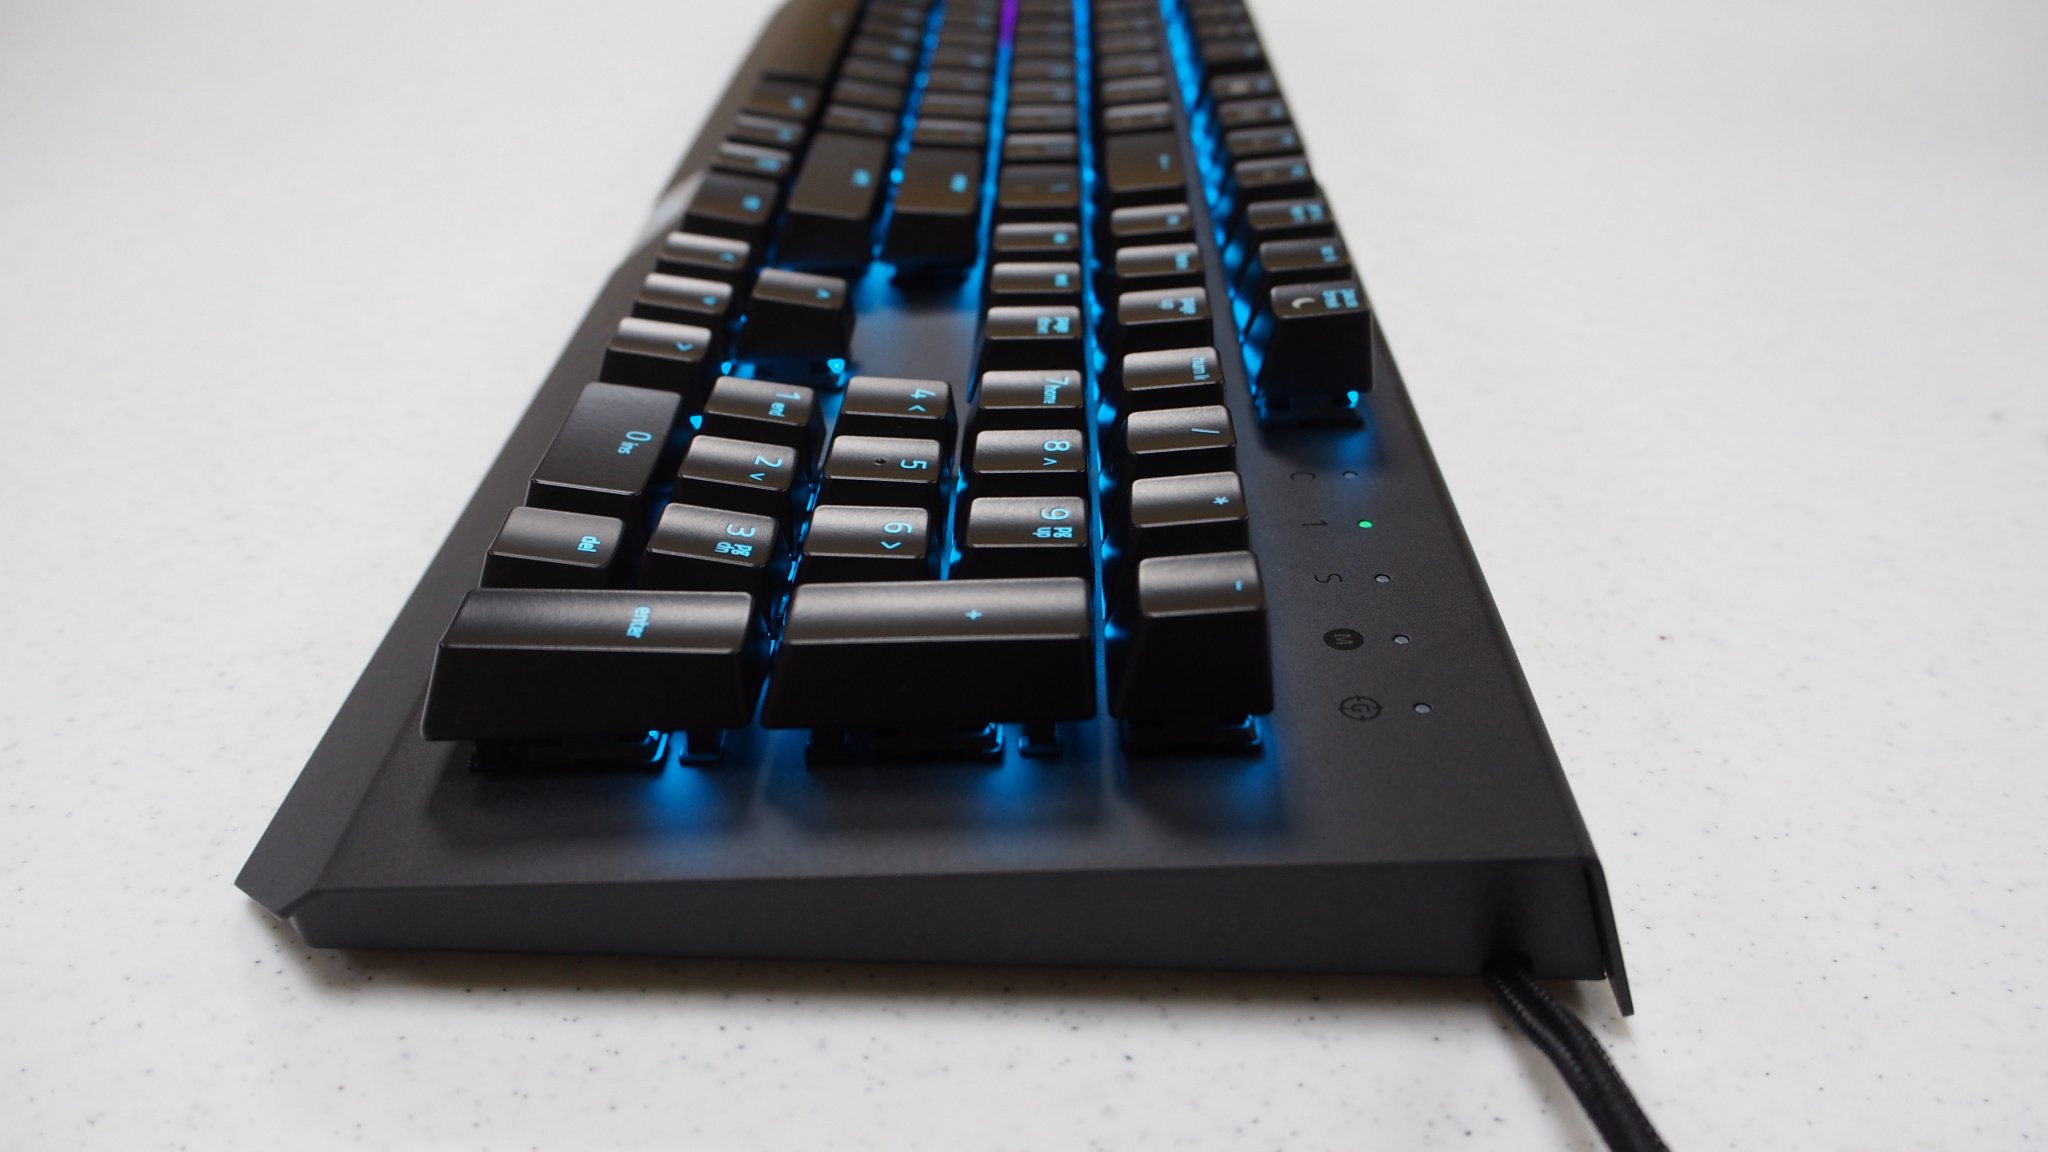 Razer BlackWidow X Chroma mechanical keyboard review